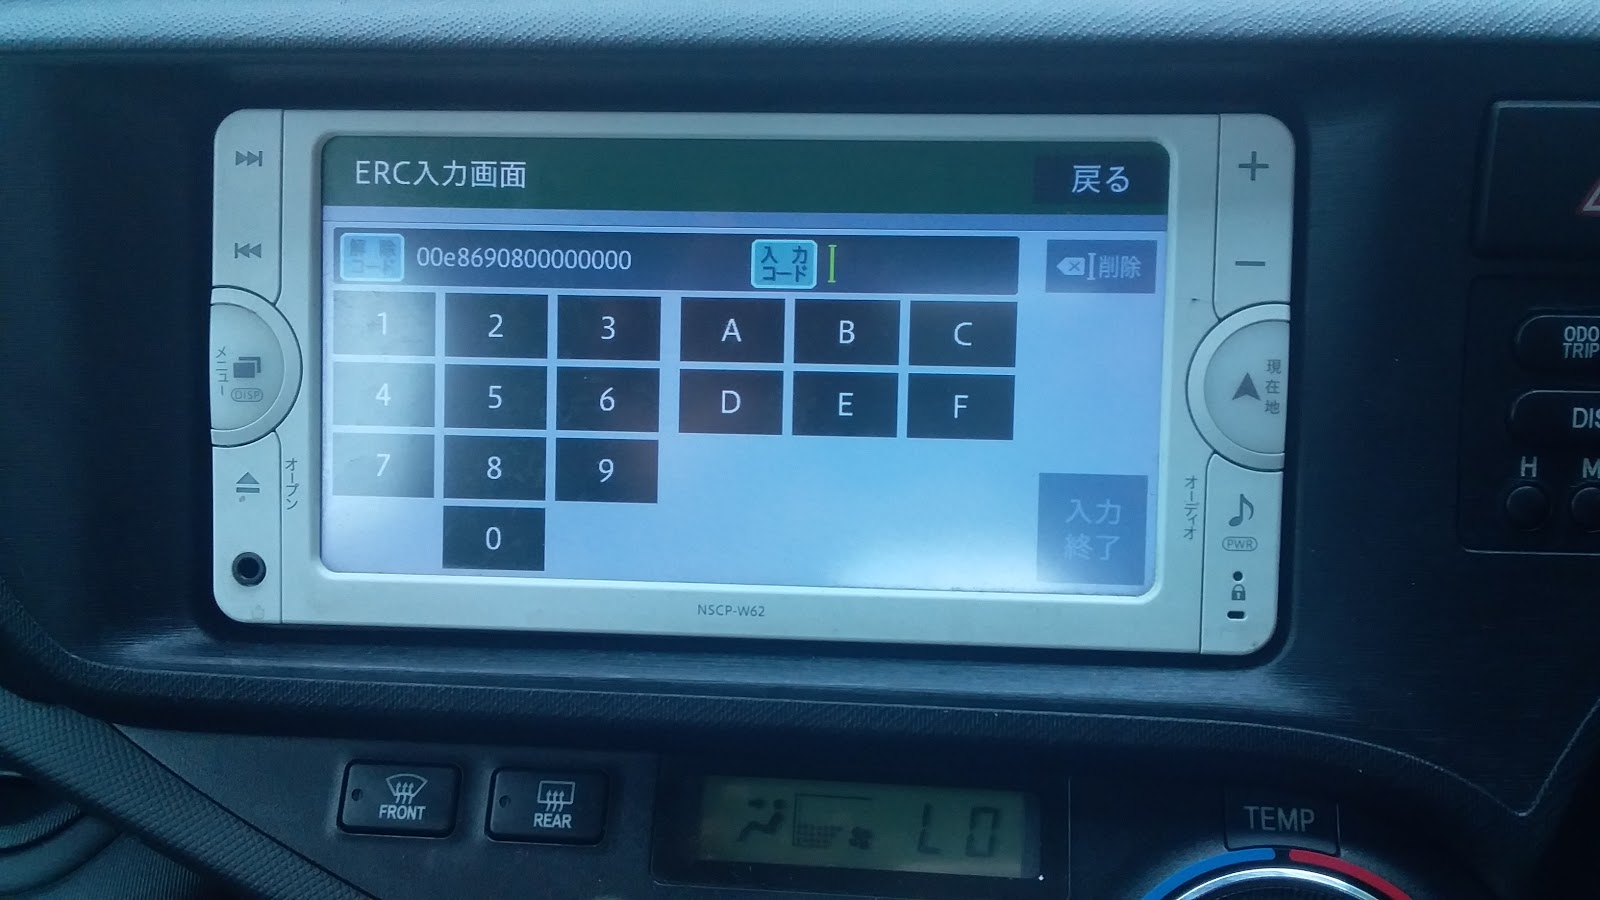 NavigationDisk - Japanese Car Navigation Unlock Solution: All Toyota ...